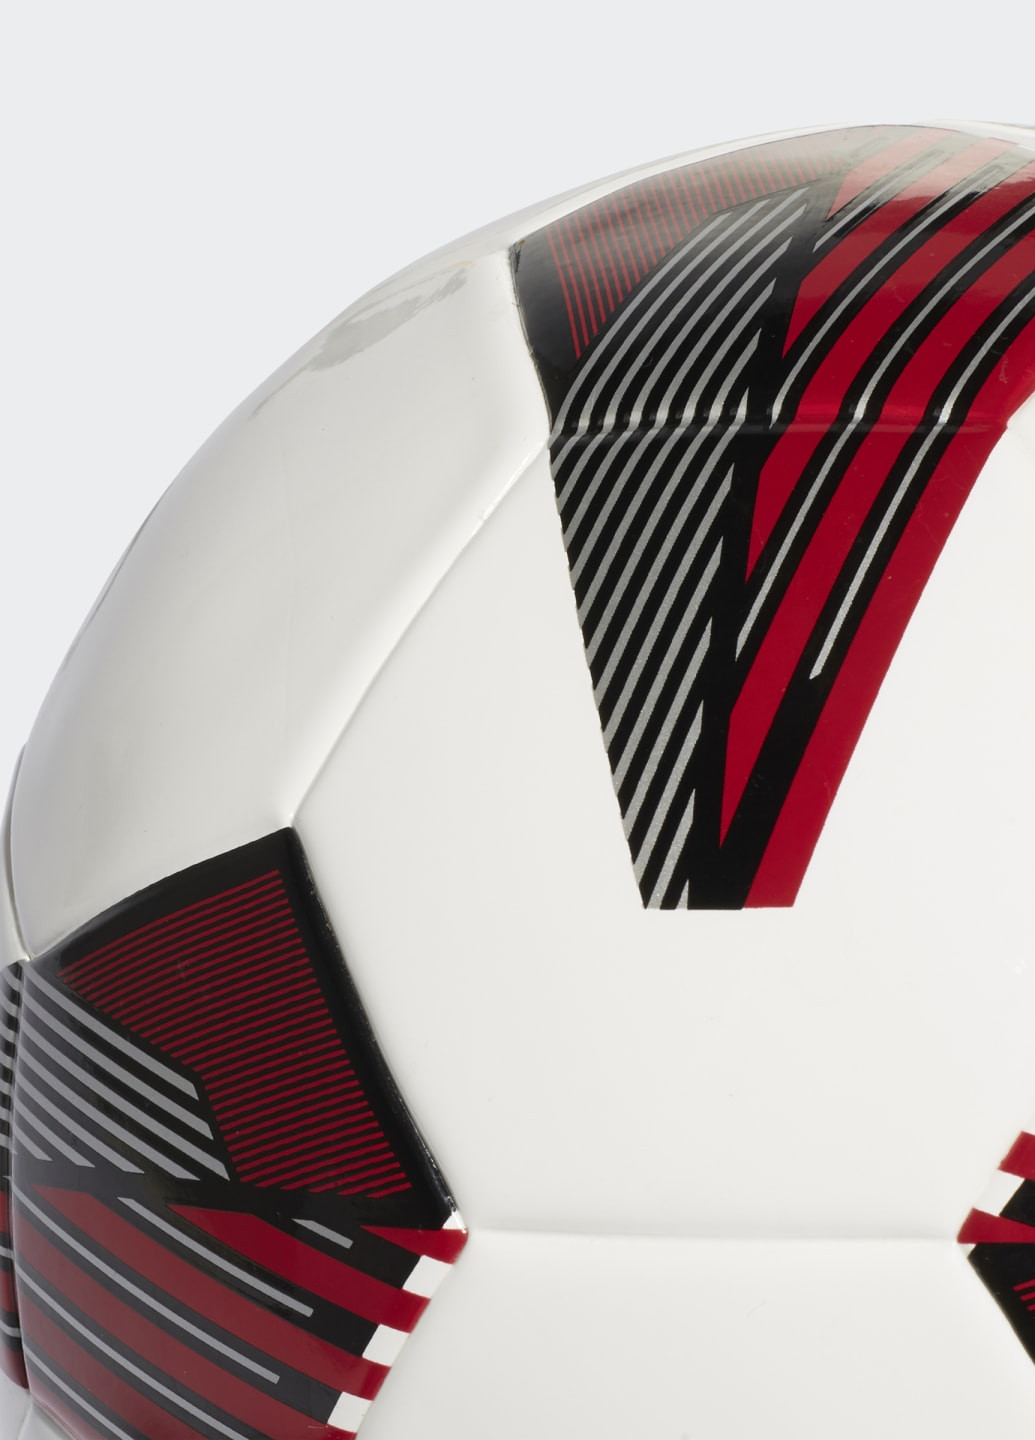 Футбольный мяч Tiro League Sala adidas (252464506)